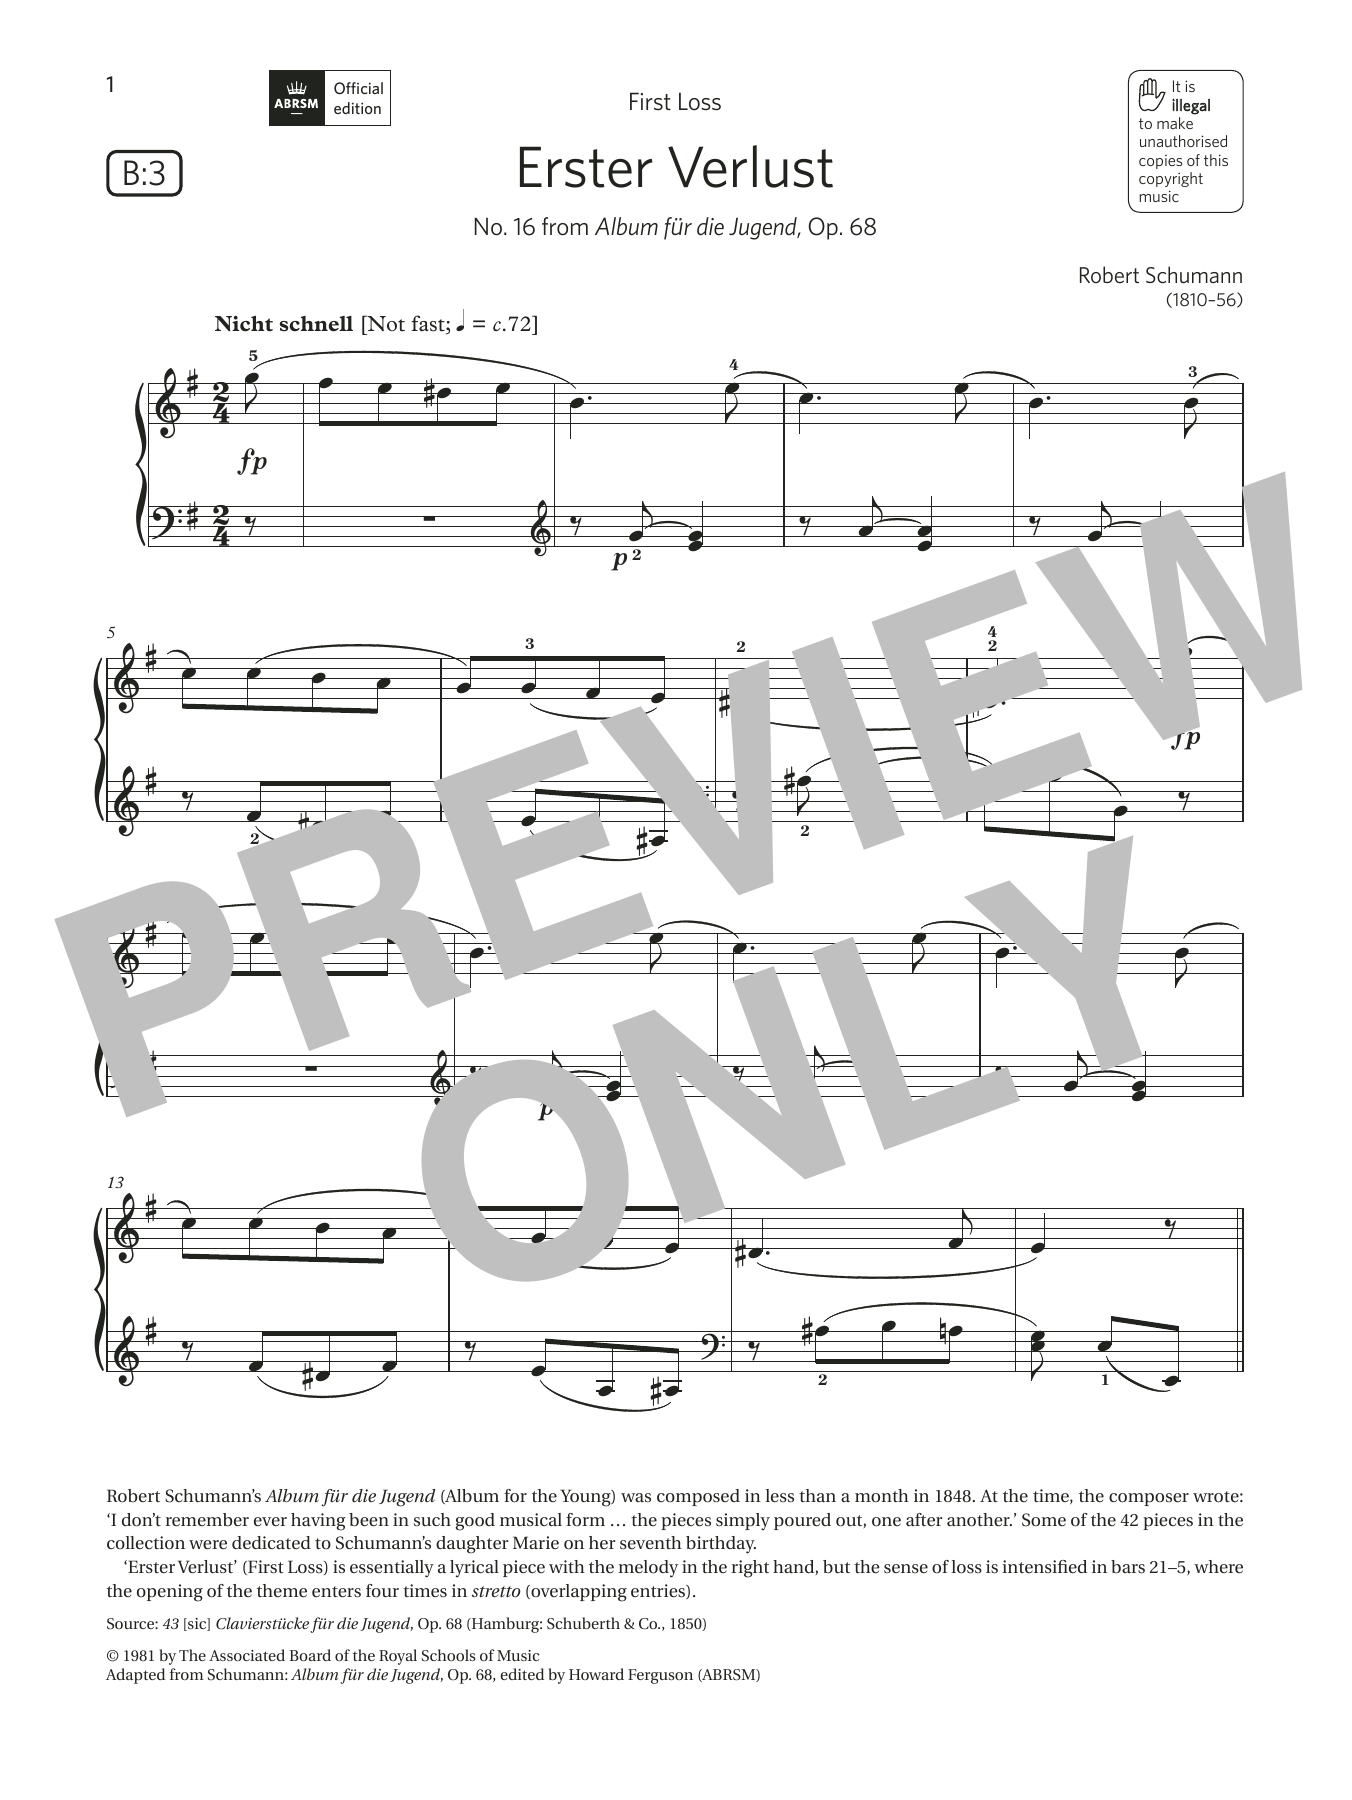 Download Robert Schumann Erster Verlust (Grade 4, list B3, from Sheet Music